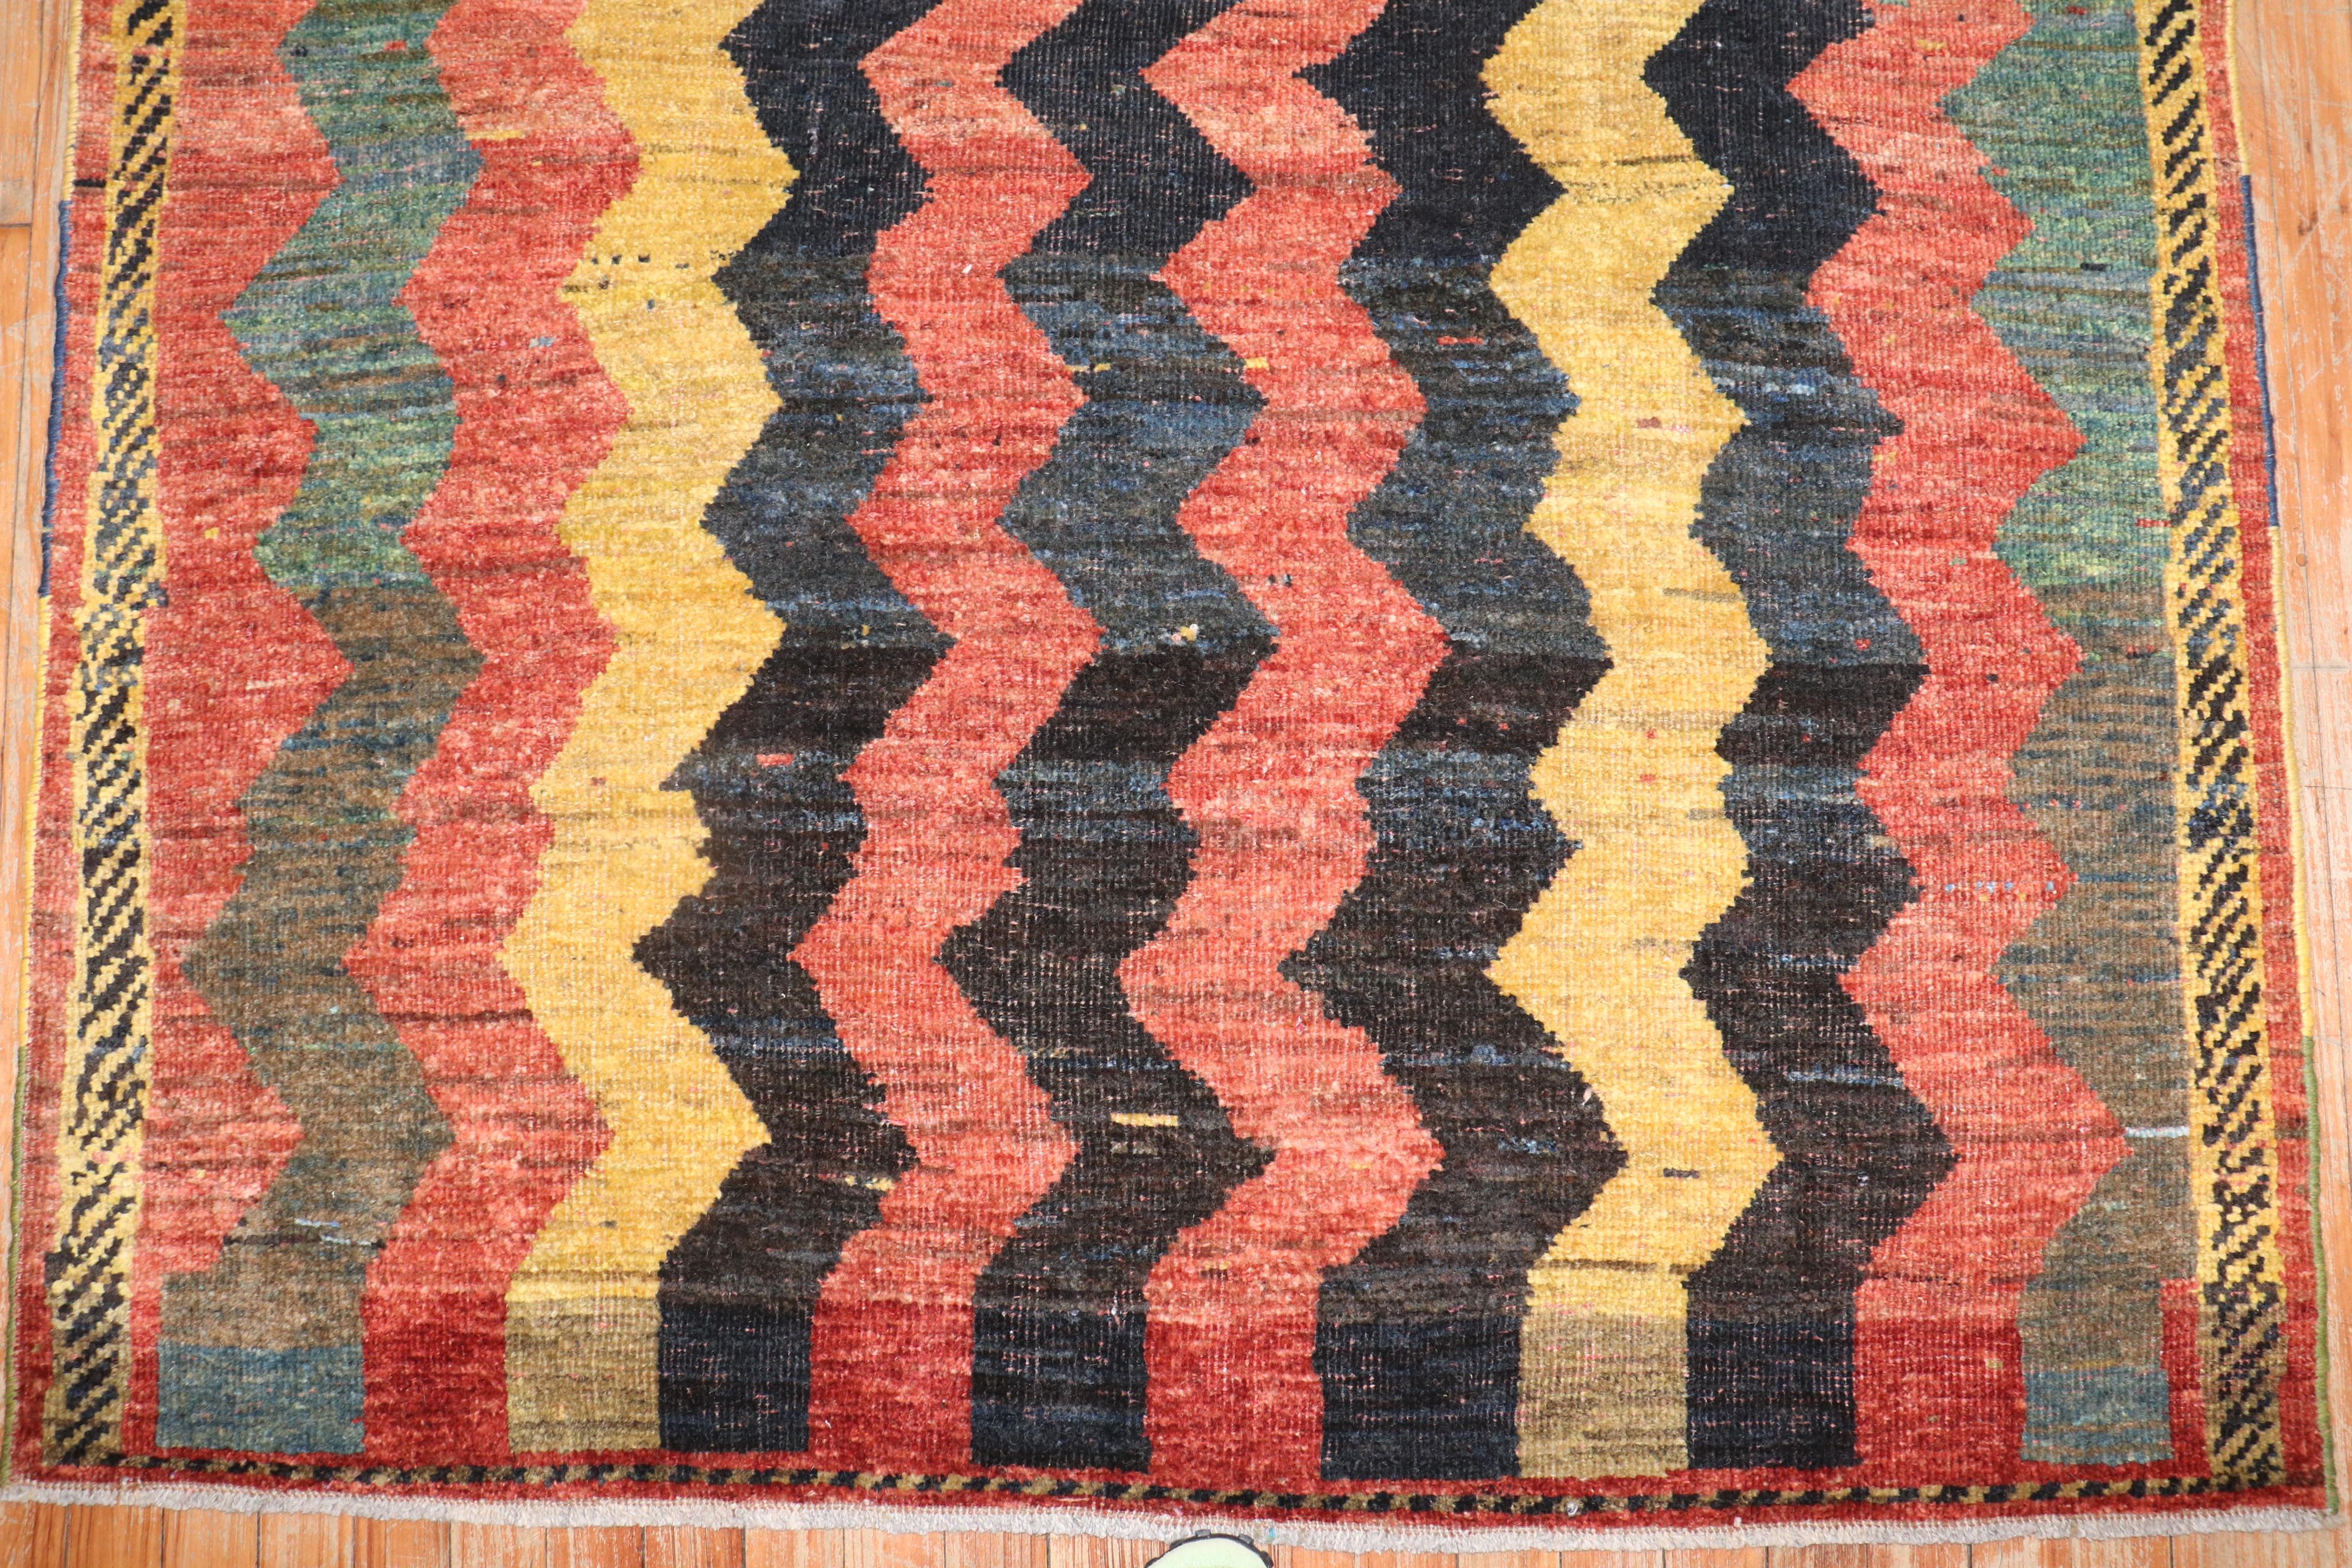 ein persischer Gabbeh-Teppich aus dem 3. Quartal des 20. Jahrhunderts mit einem wellenförmigen Zick-Zack-Muster

Größe	3' 5